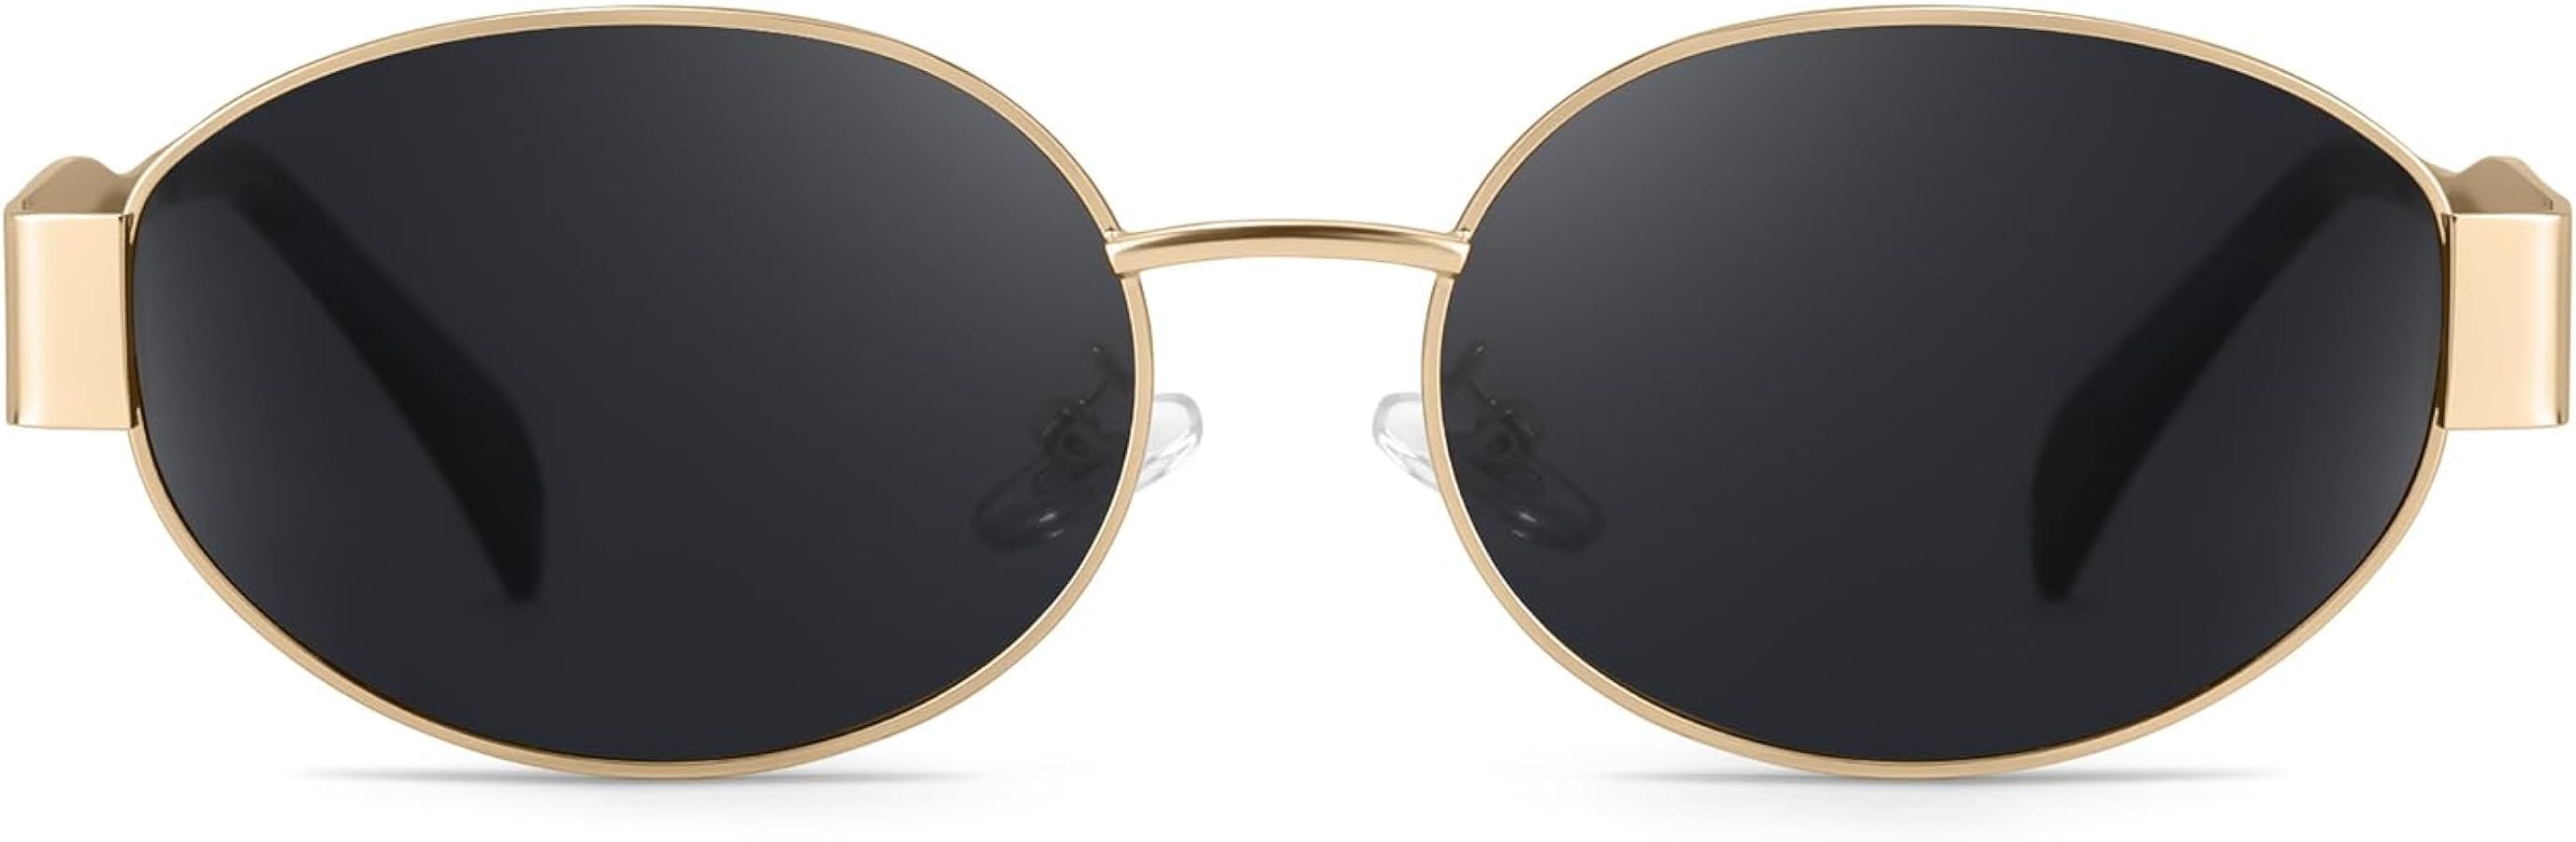 Retro Oval Sunglasses for Women Trendy Designer Sun Glasses Womens Shades Fashion Accessories for... | Amazon (US)